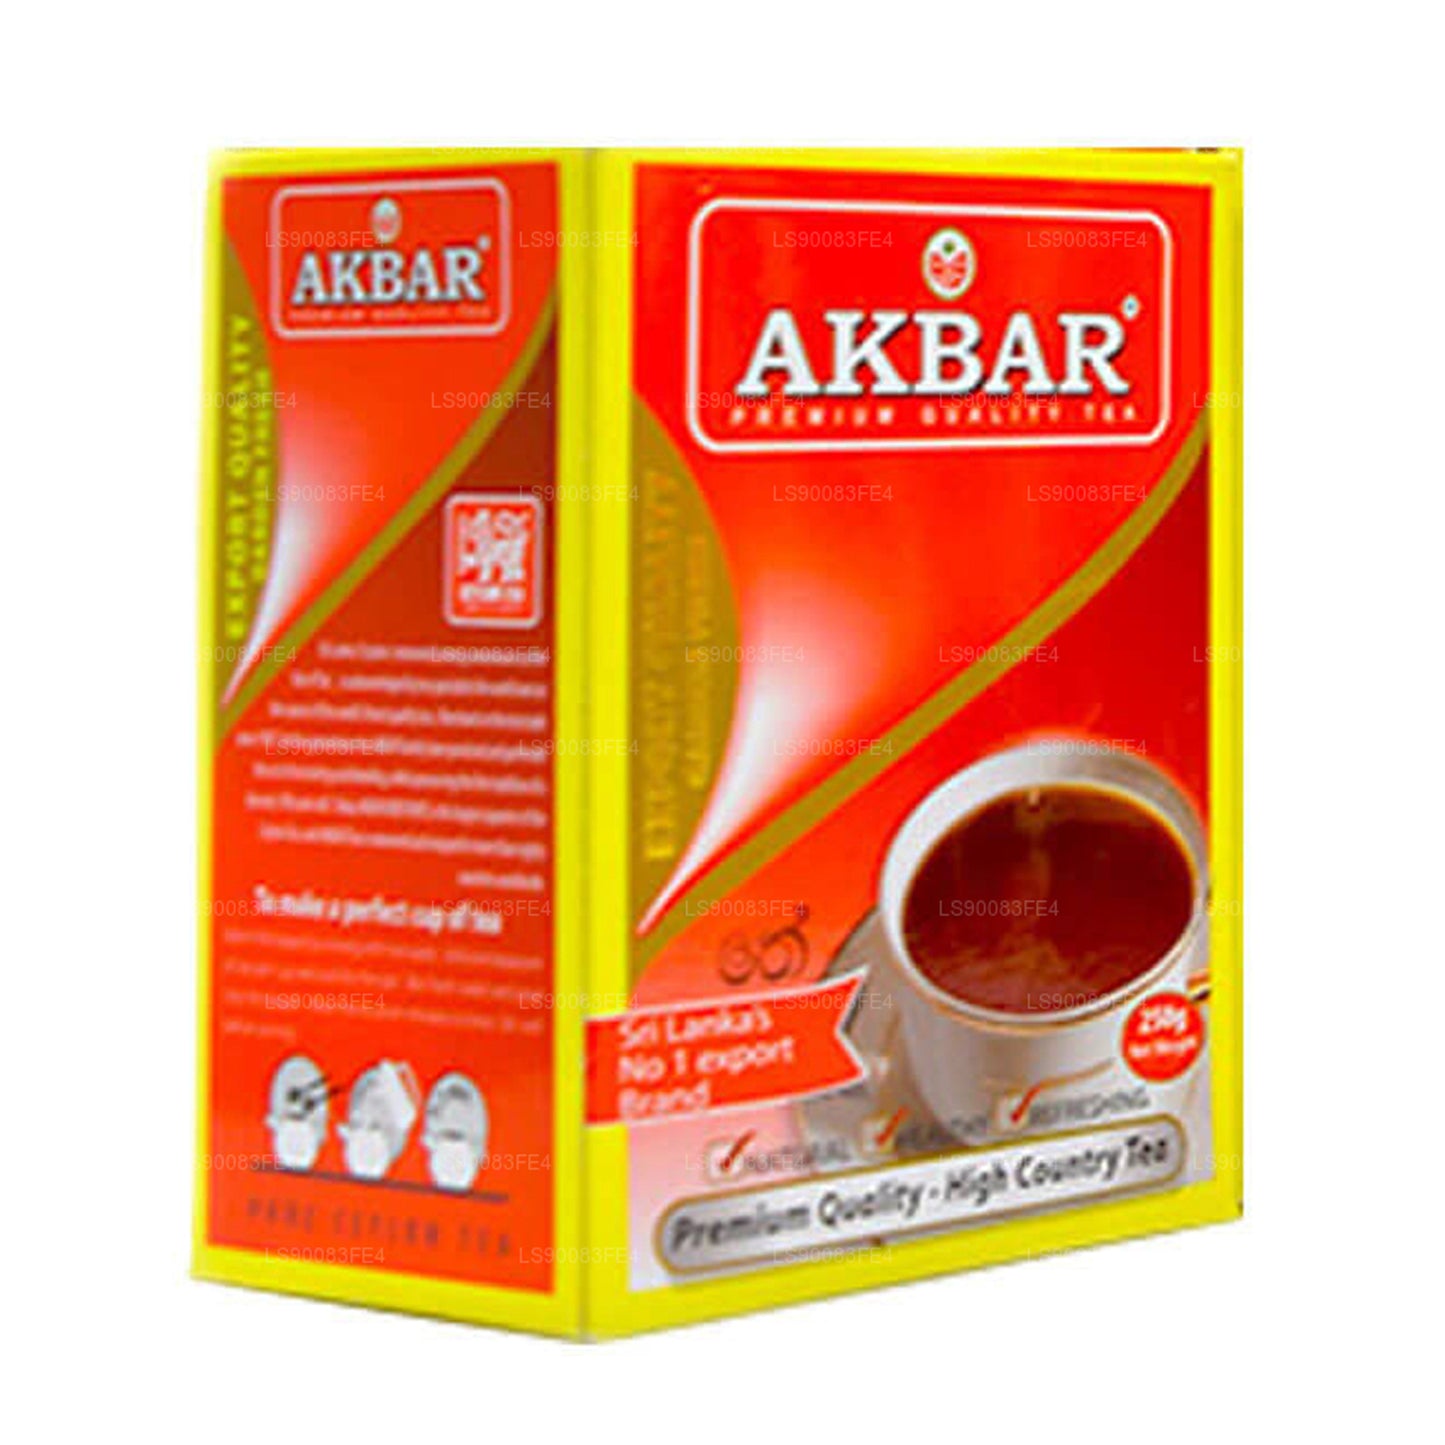 アクバルプレミアムクオリティ紅茶 (250g)